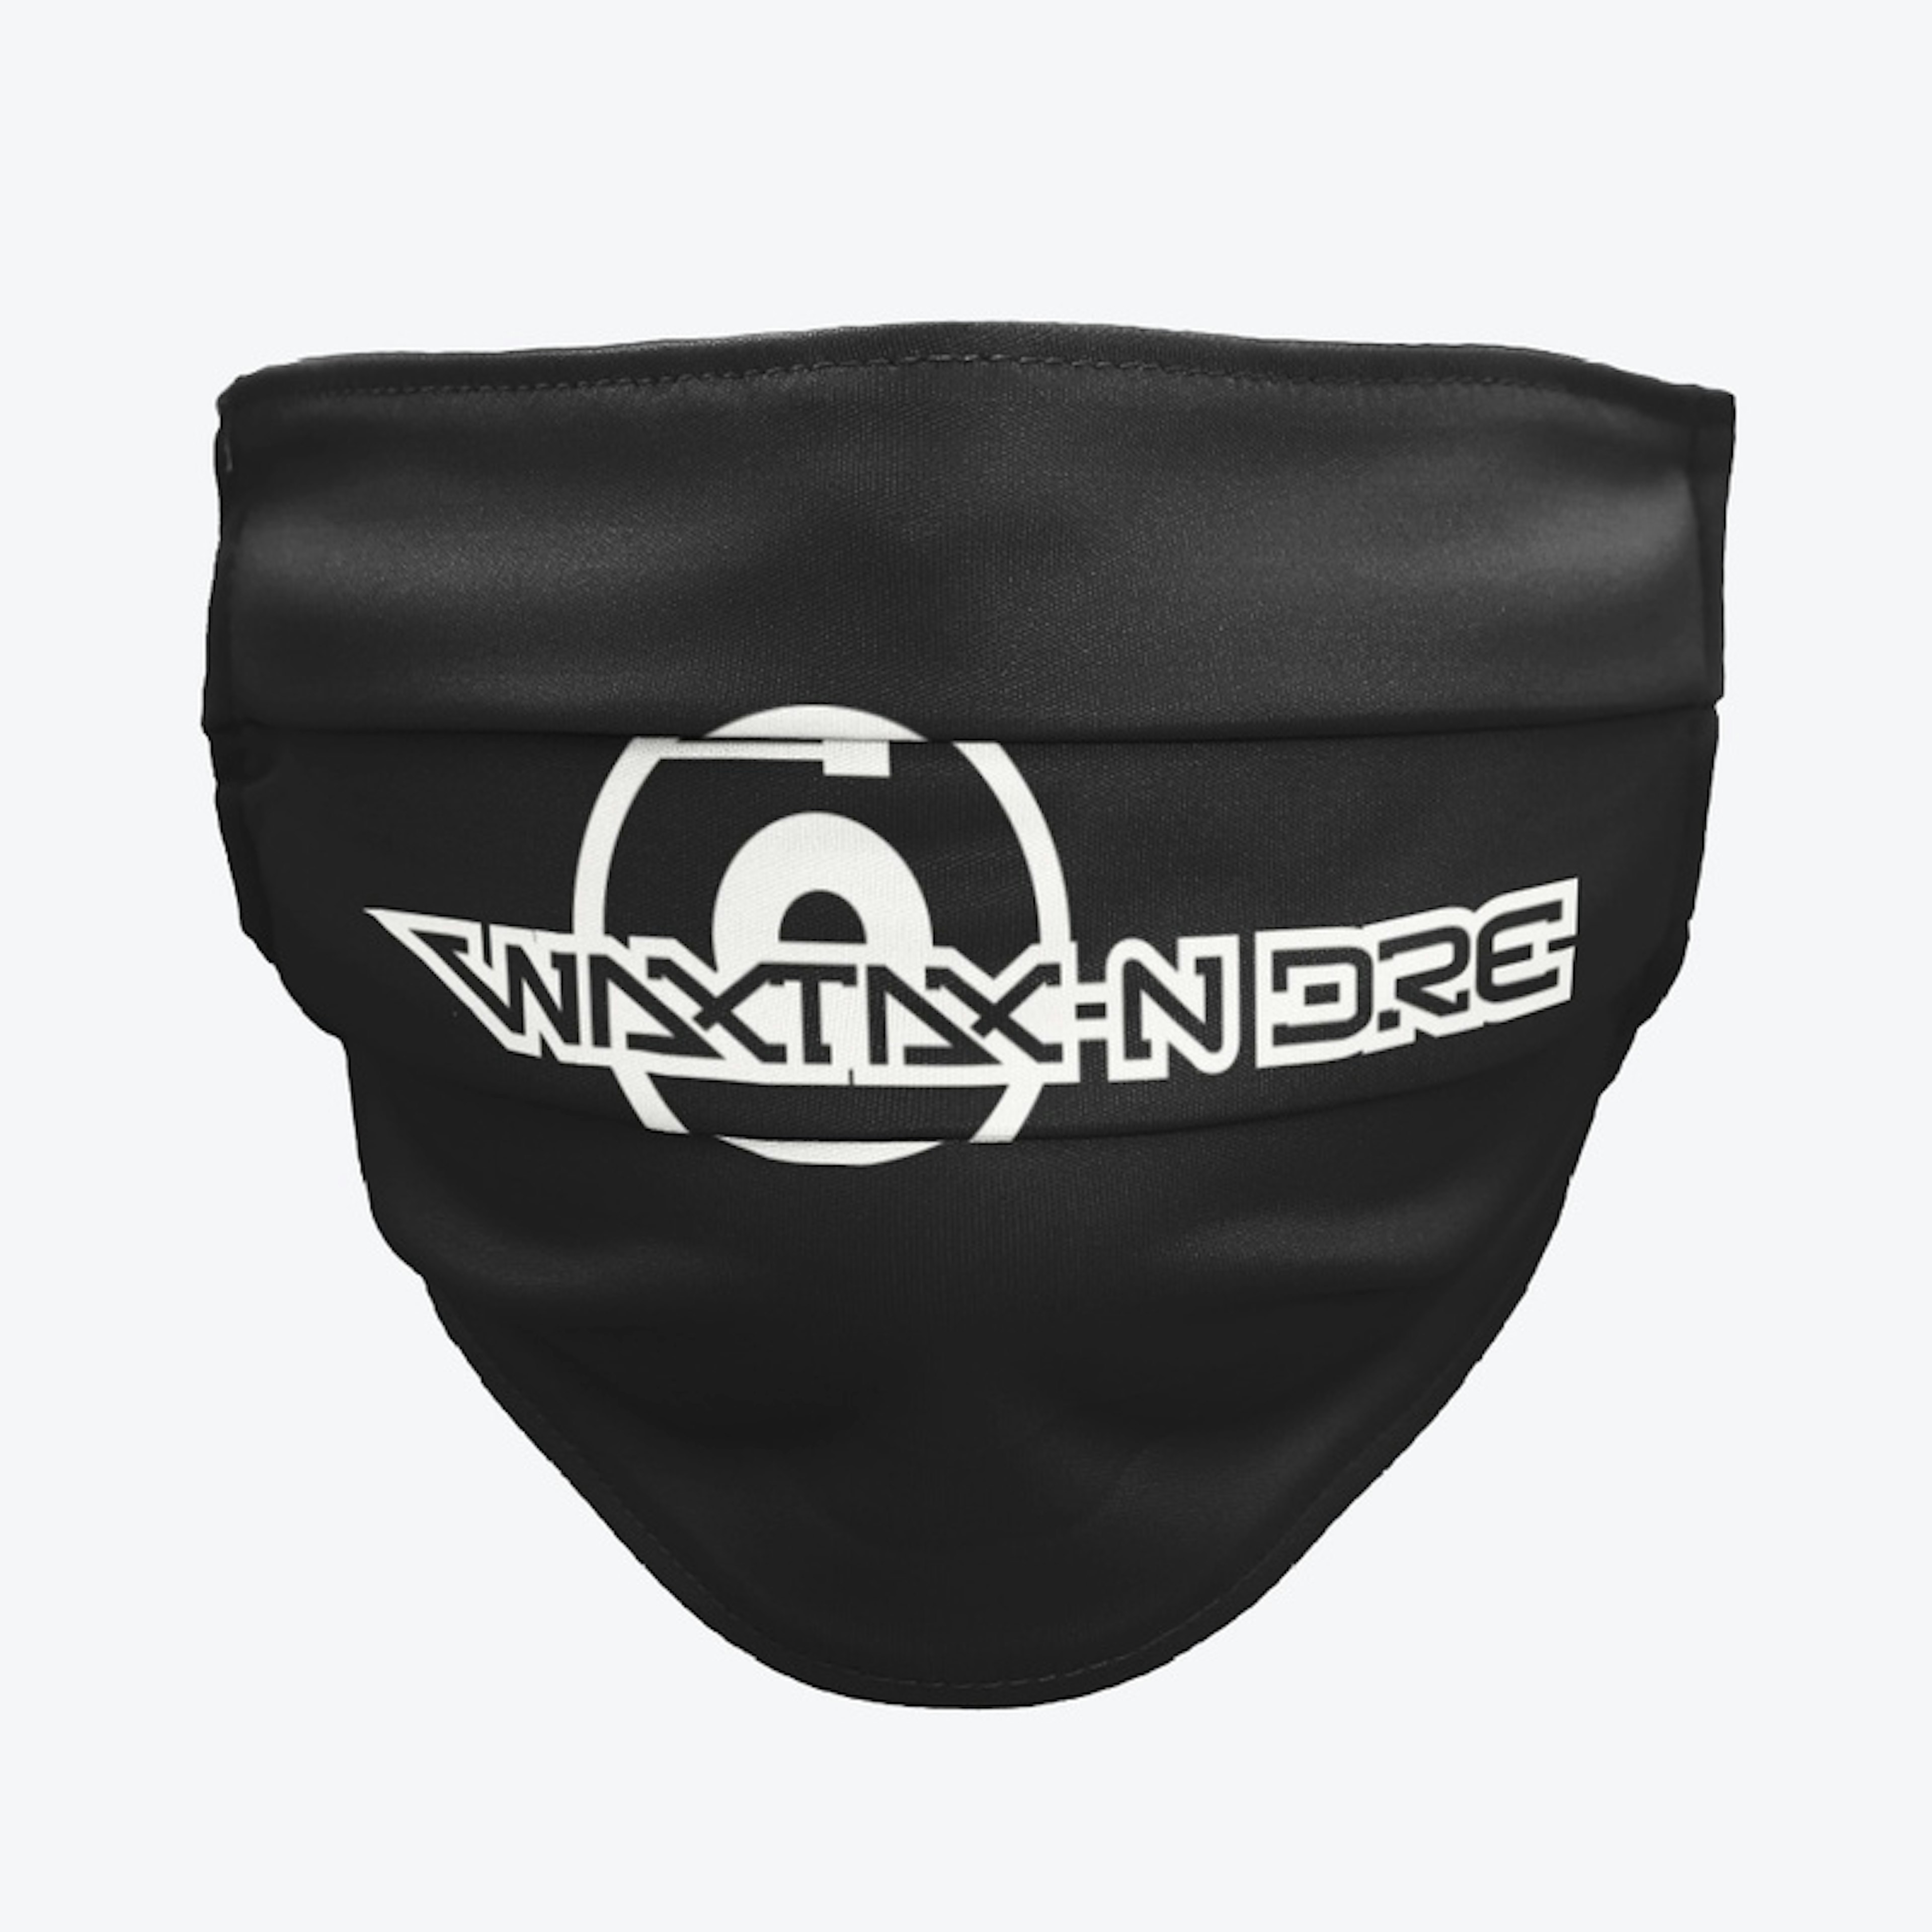 WAXTAX-N DRE white letter apparel